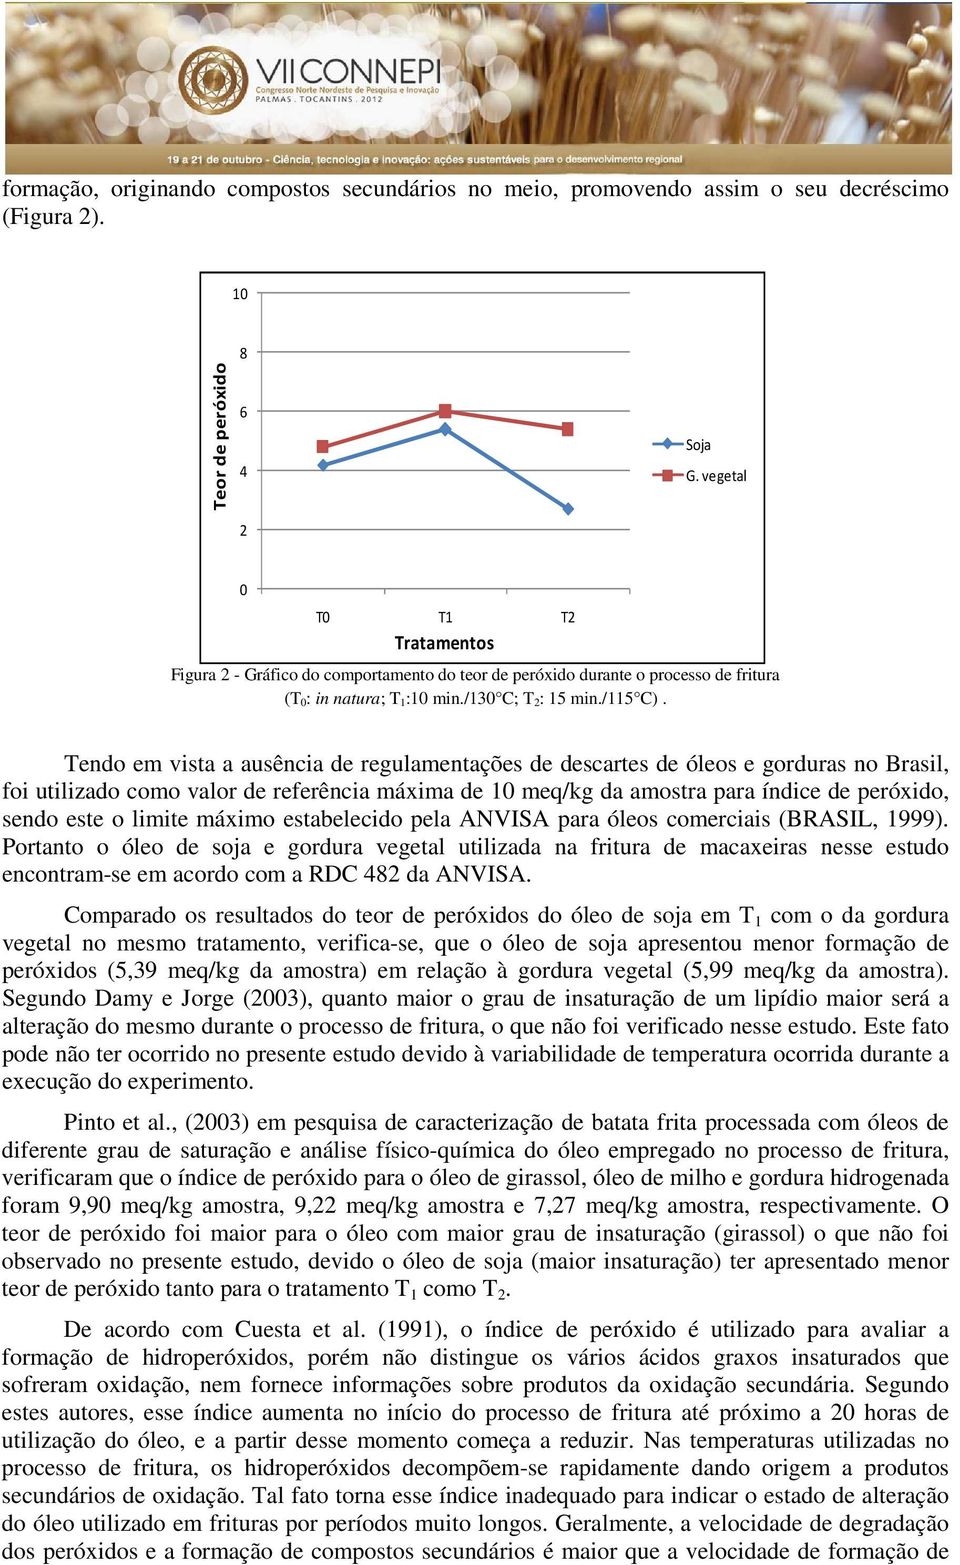 Tendo em vista a ausência de regulamentações de descartes de óleos e gorduras no Brasil, foi utilizado como valor de referência máxima de 10 meq/kg da amostra para índice de peróxido, sendo este o